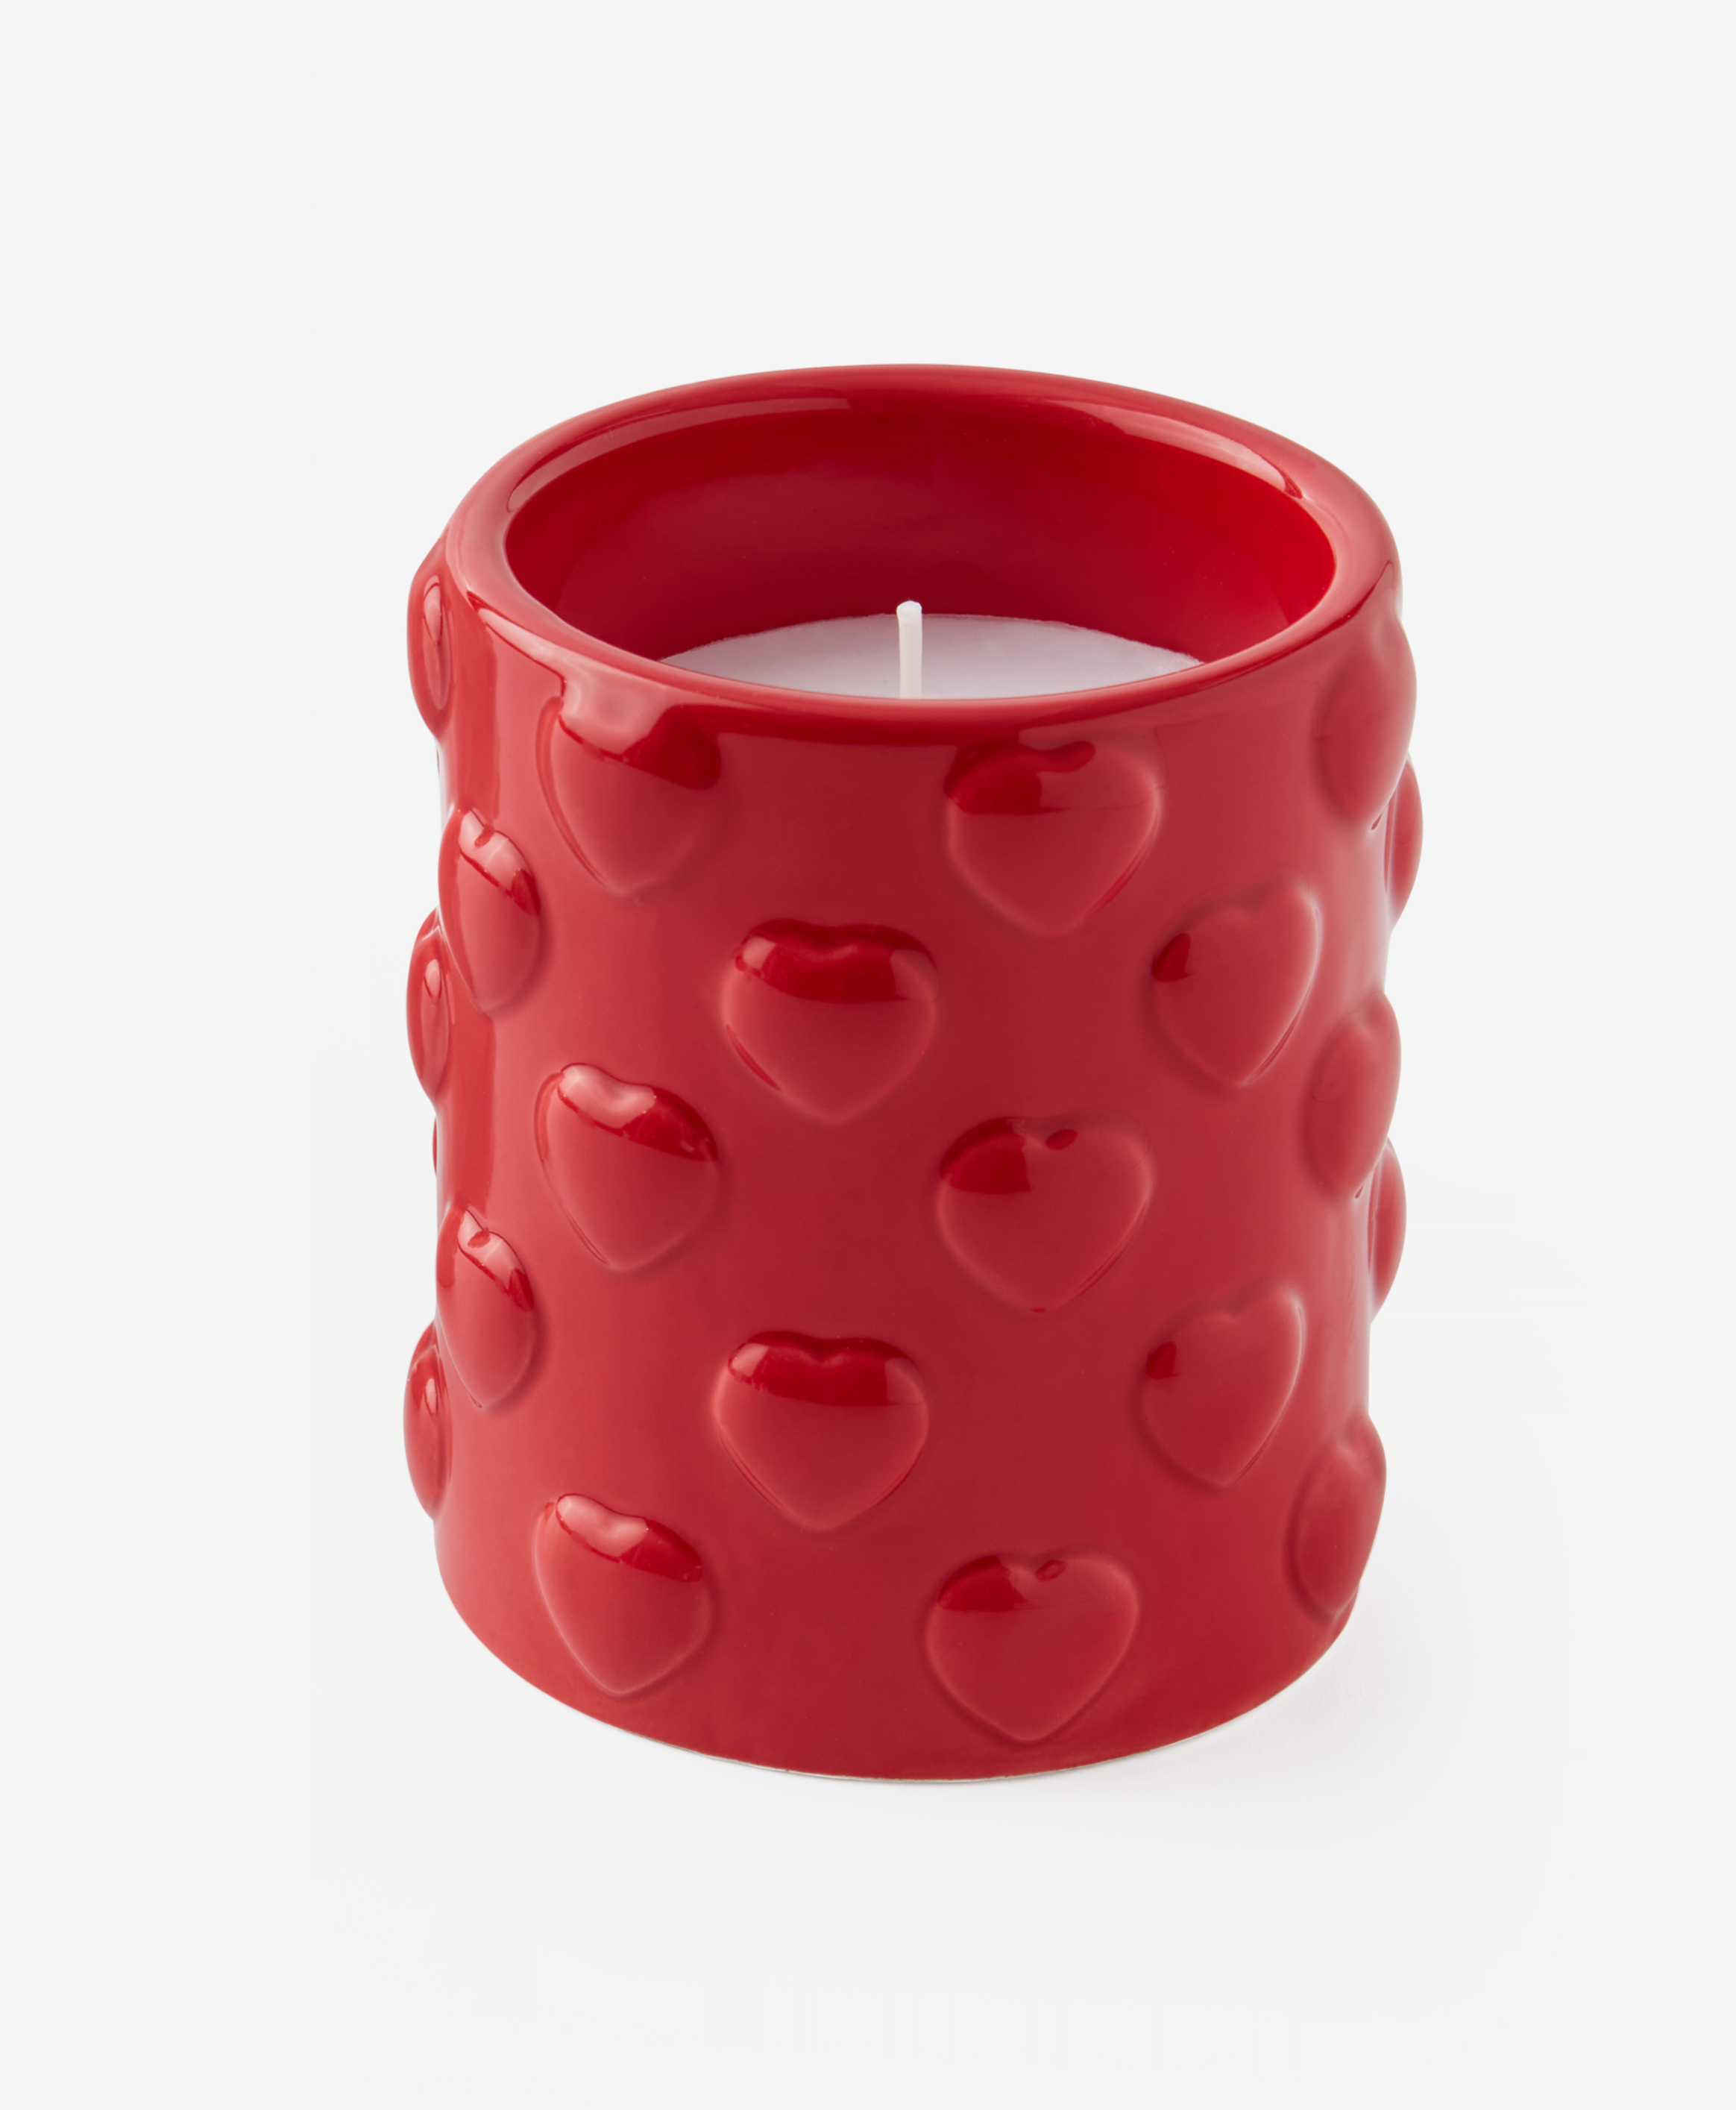 Kerze aus Keramik, rot, ø 8,5 cm, Höhe: 10 cm